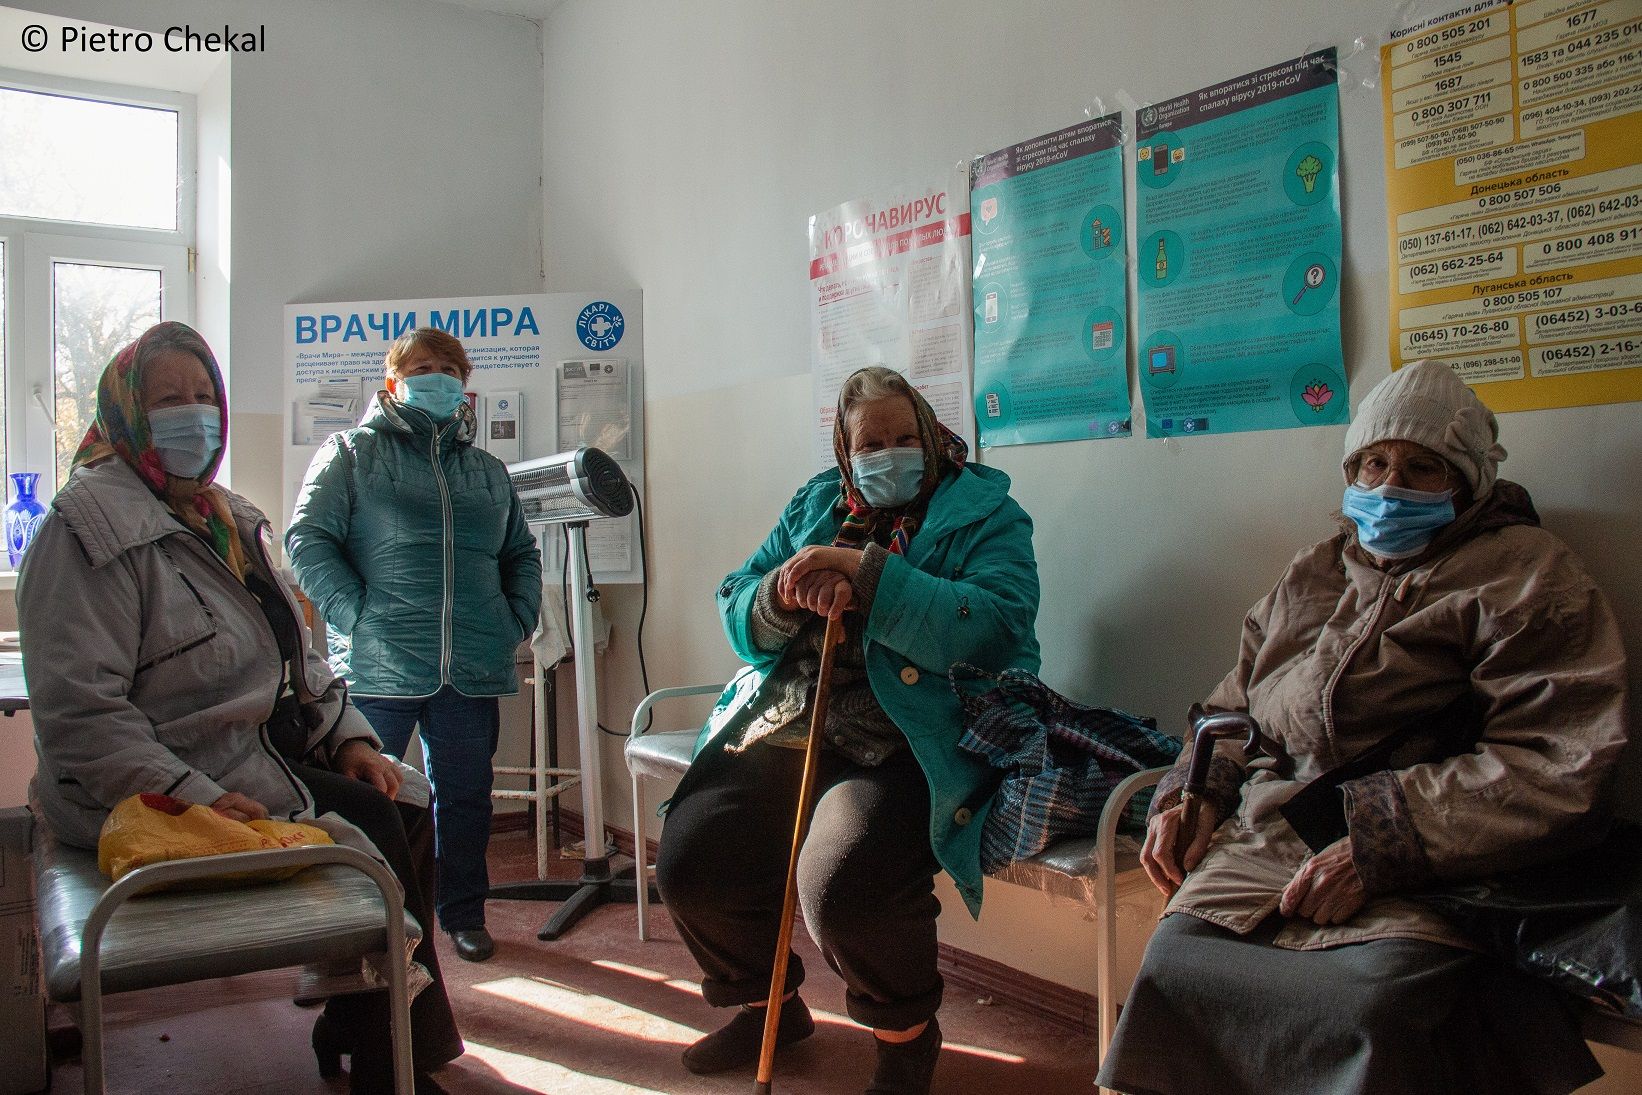 ONG Médicos del Mundo mantiene un corredor de ayuda humanitaria en Ucrania a través de frontera con Rumanía